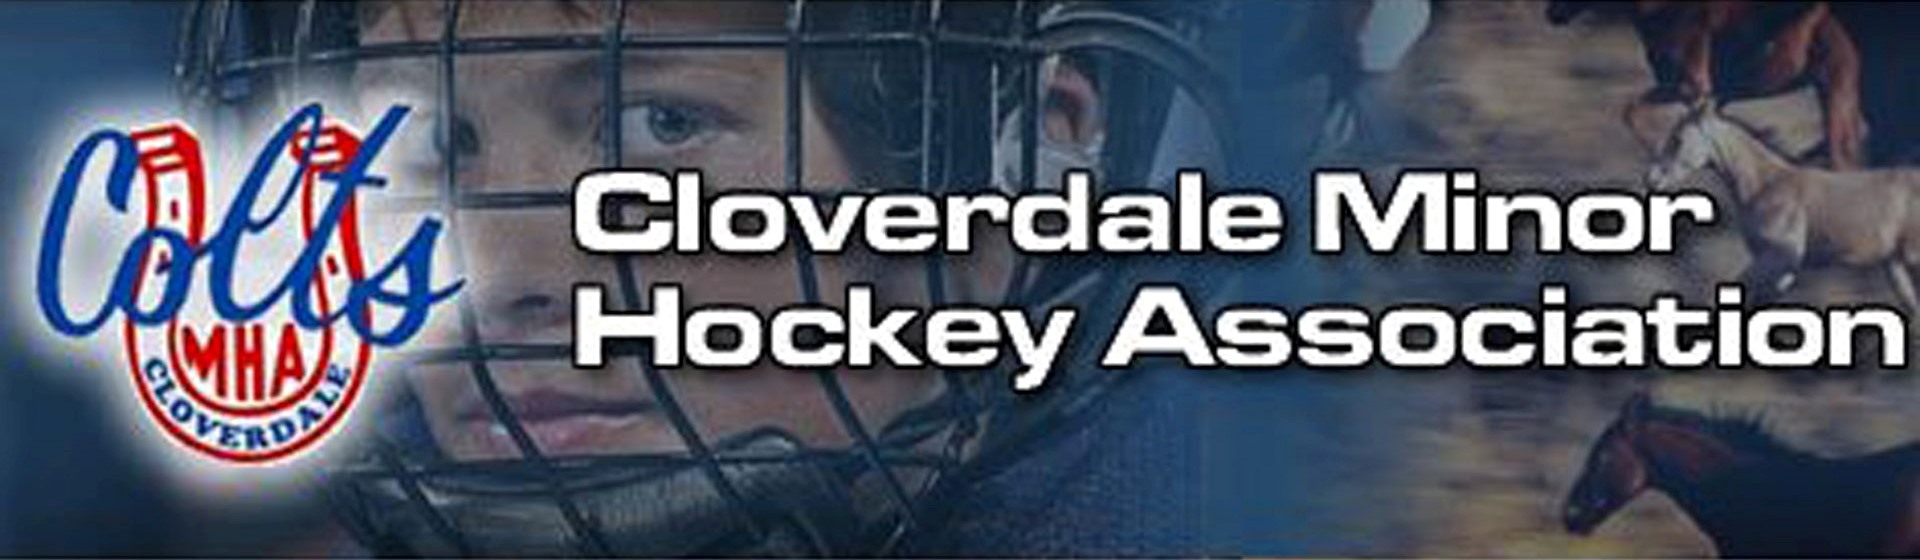 Cloverdale Minor Hockey Association